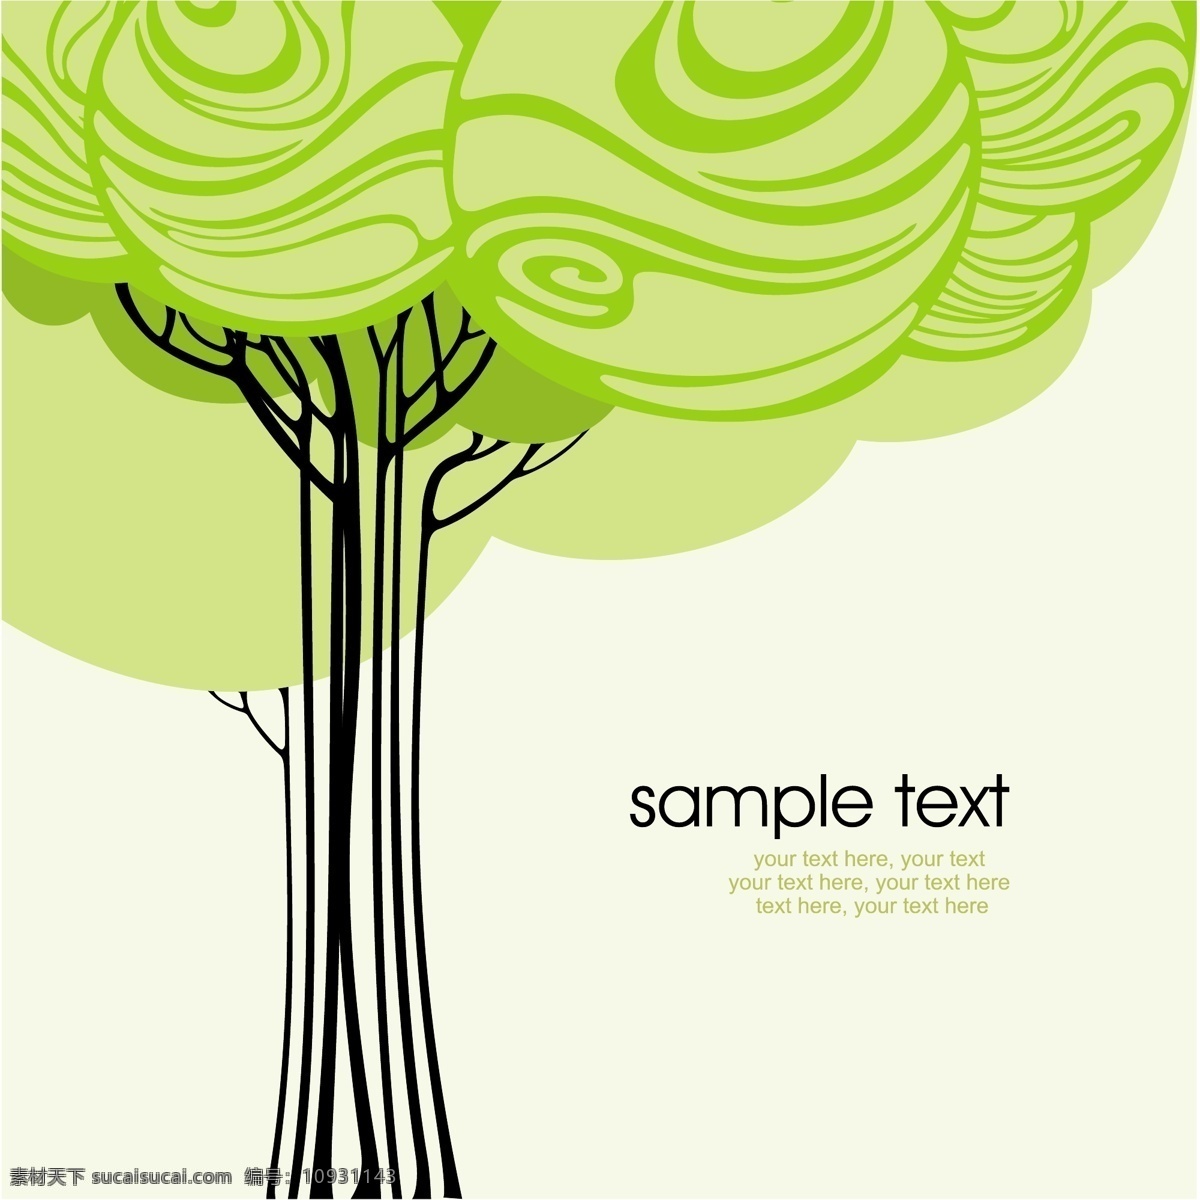 矢量 绿树 背景 模板 插画 底纹 环保 绿色 矢量素材 树木 图形 矢量图 其他矢量图